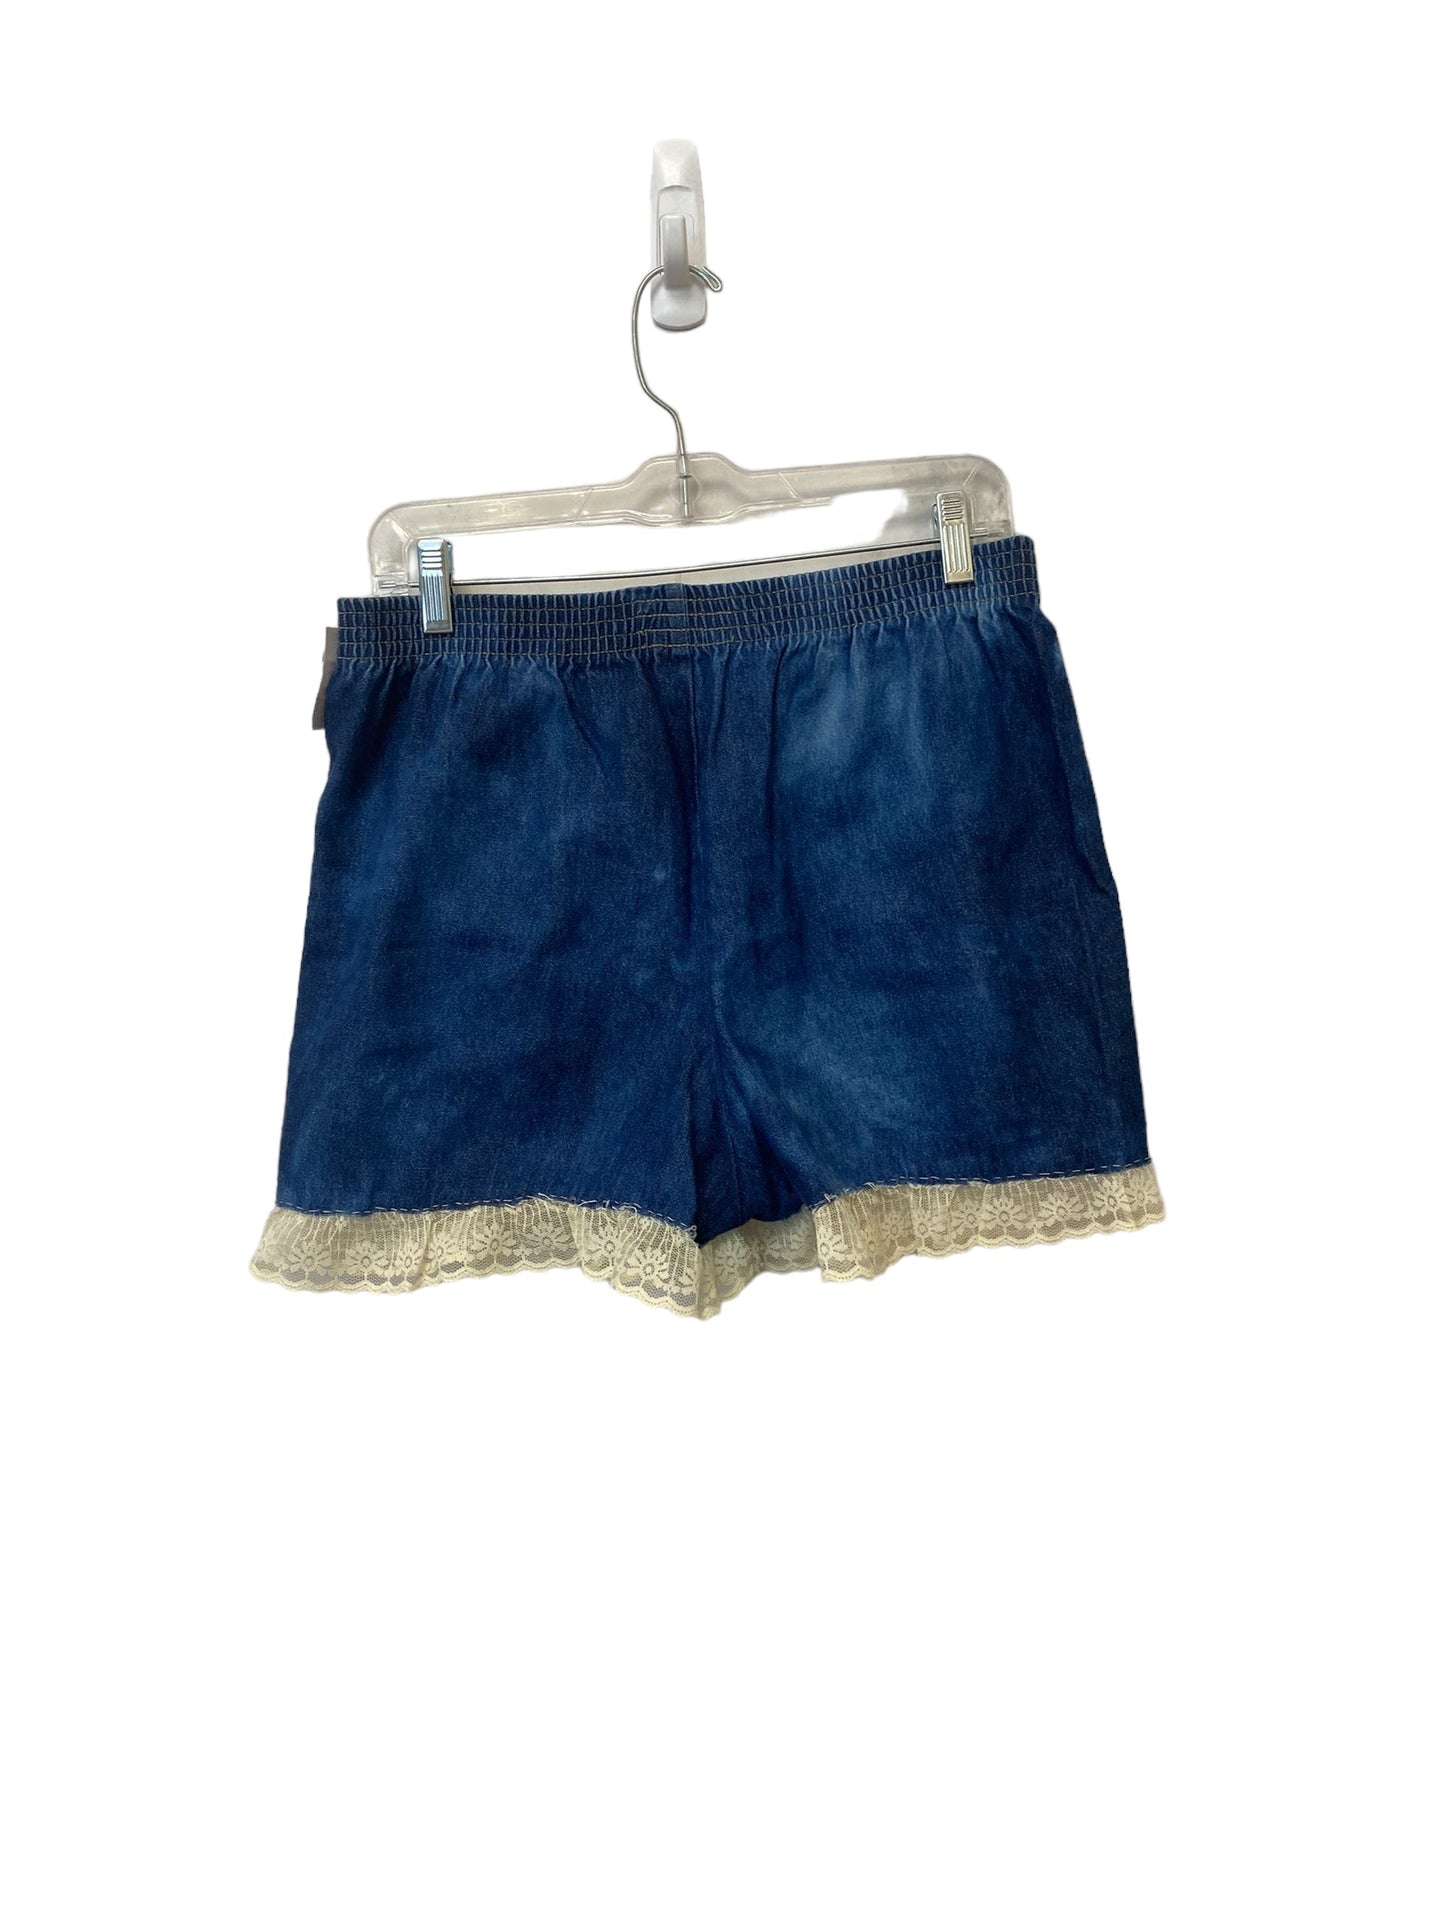 Blue Denim Shorts Clothes Mentor, Size 8petite